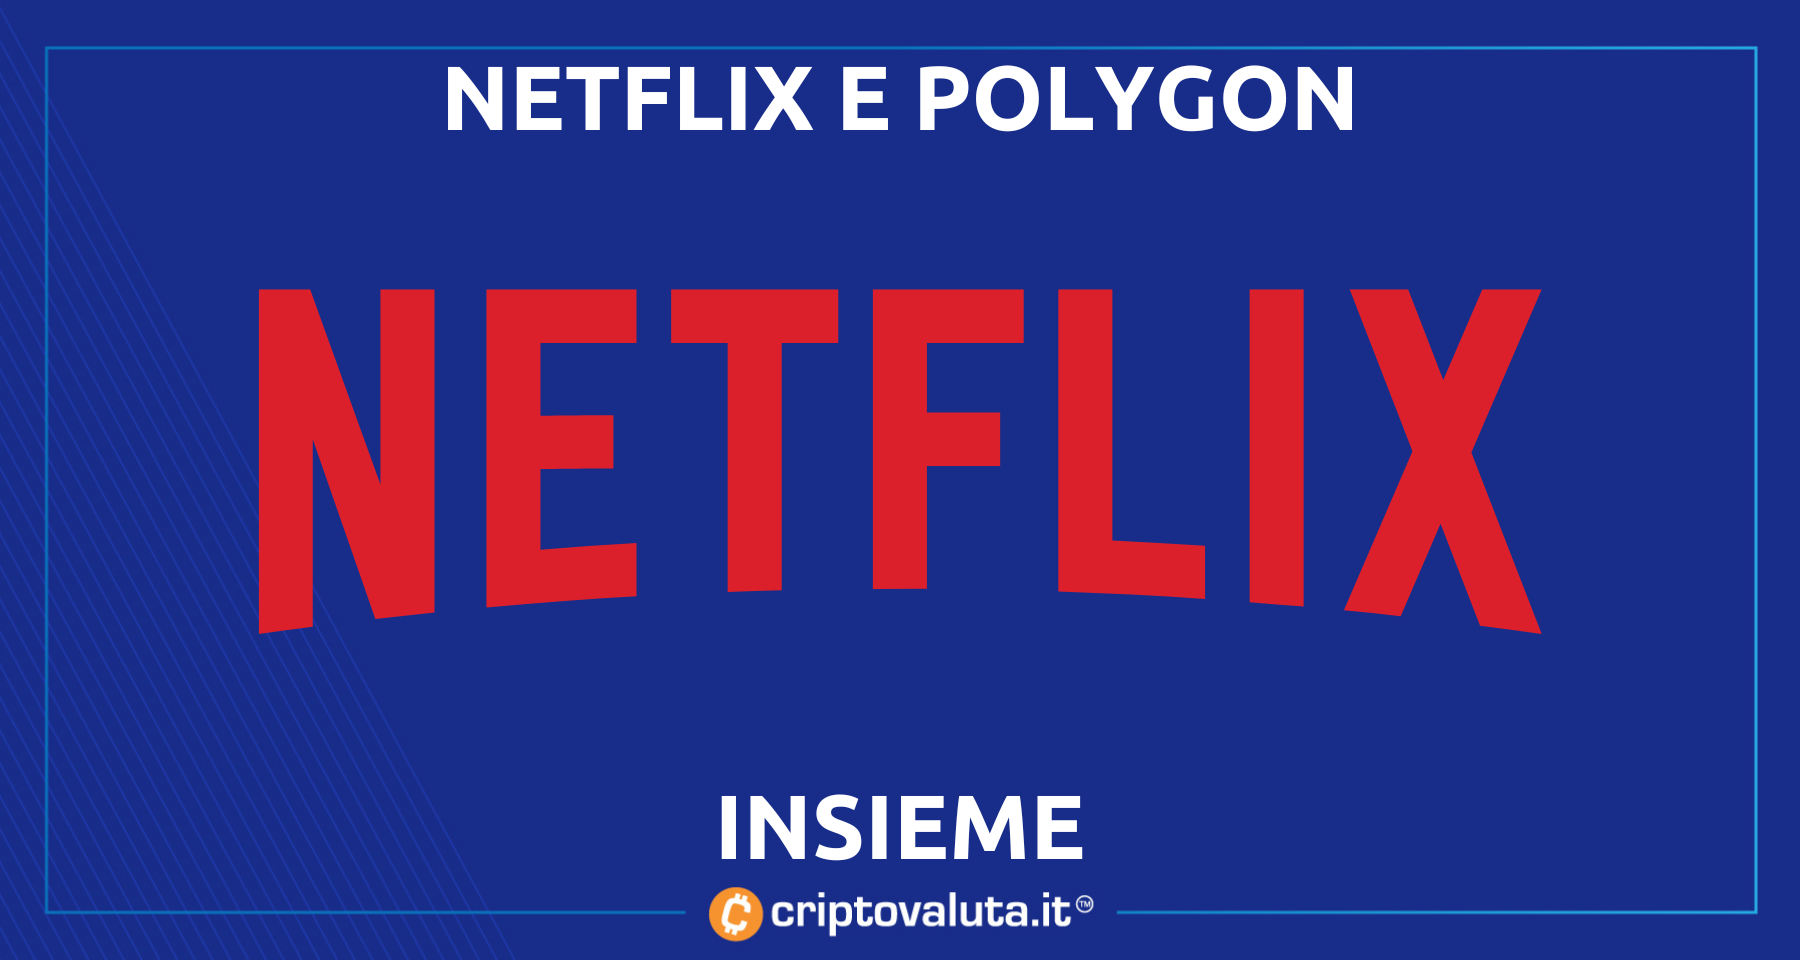 Netflix Corea e Polygon insieme | Ecco la straordinaria iniziativa